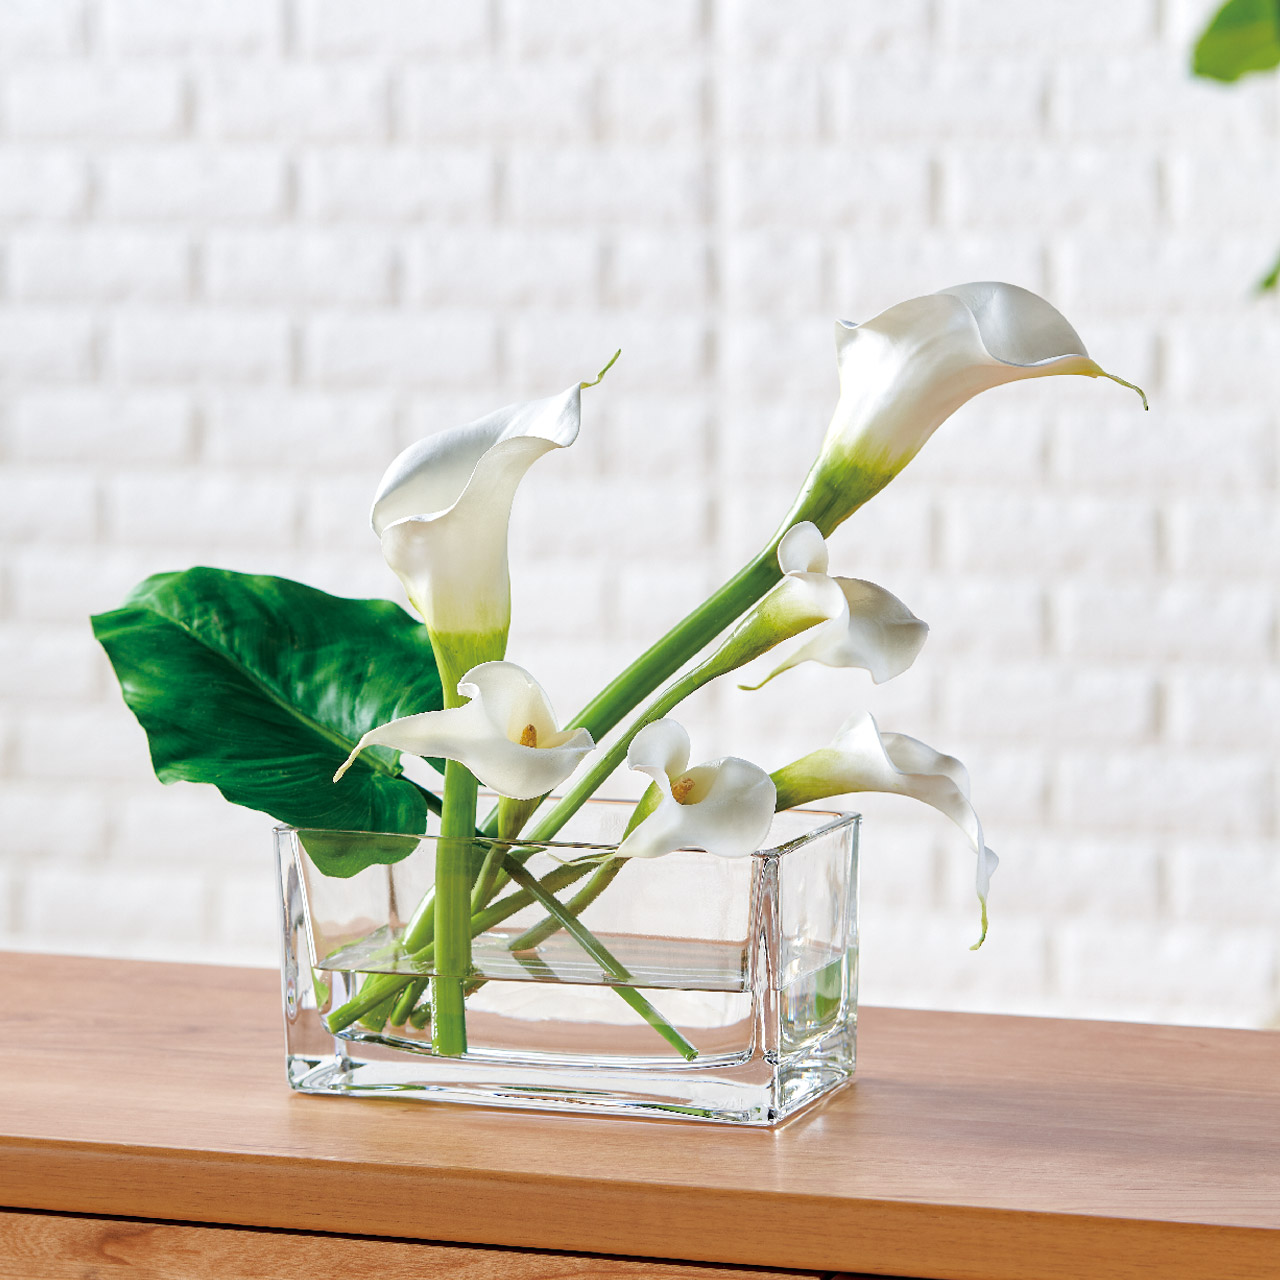 マイフラ】 通販/Winward ヴィンセントカラー M ホワイト アーティフィシャルフラワー 造花 FW099052-001 カラー(ホワイト):  MAGIQ(アーティフィシャルフラワー 造花)/全国にMAGIQ、花器、花資材などをお届けします。